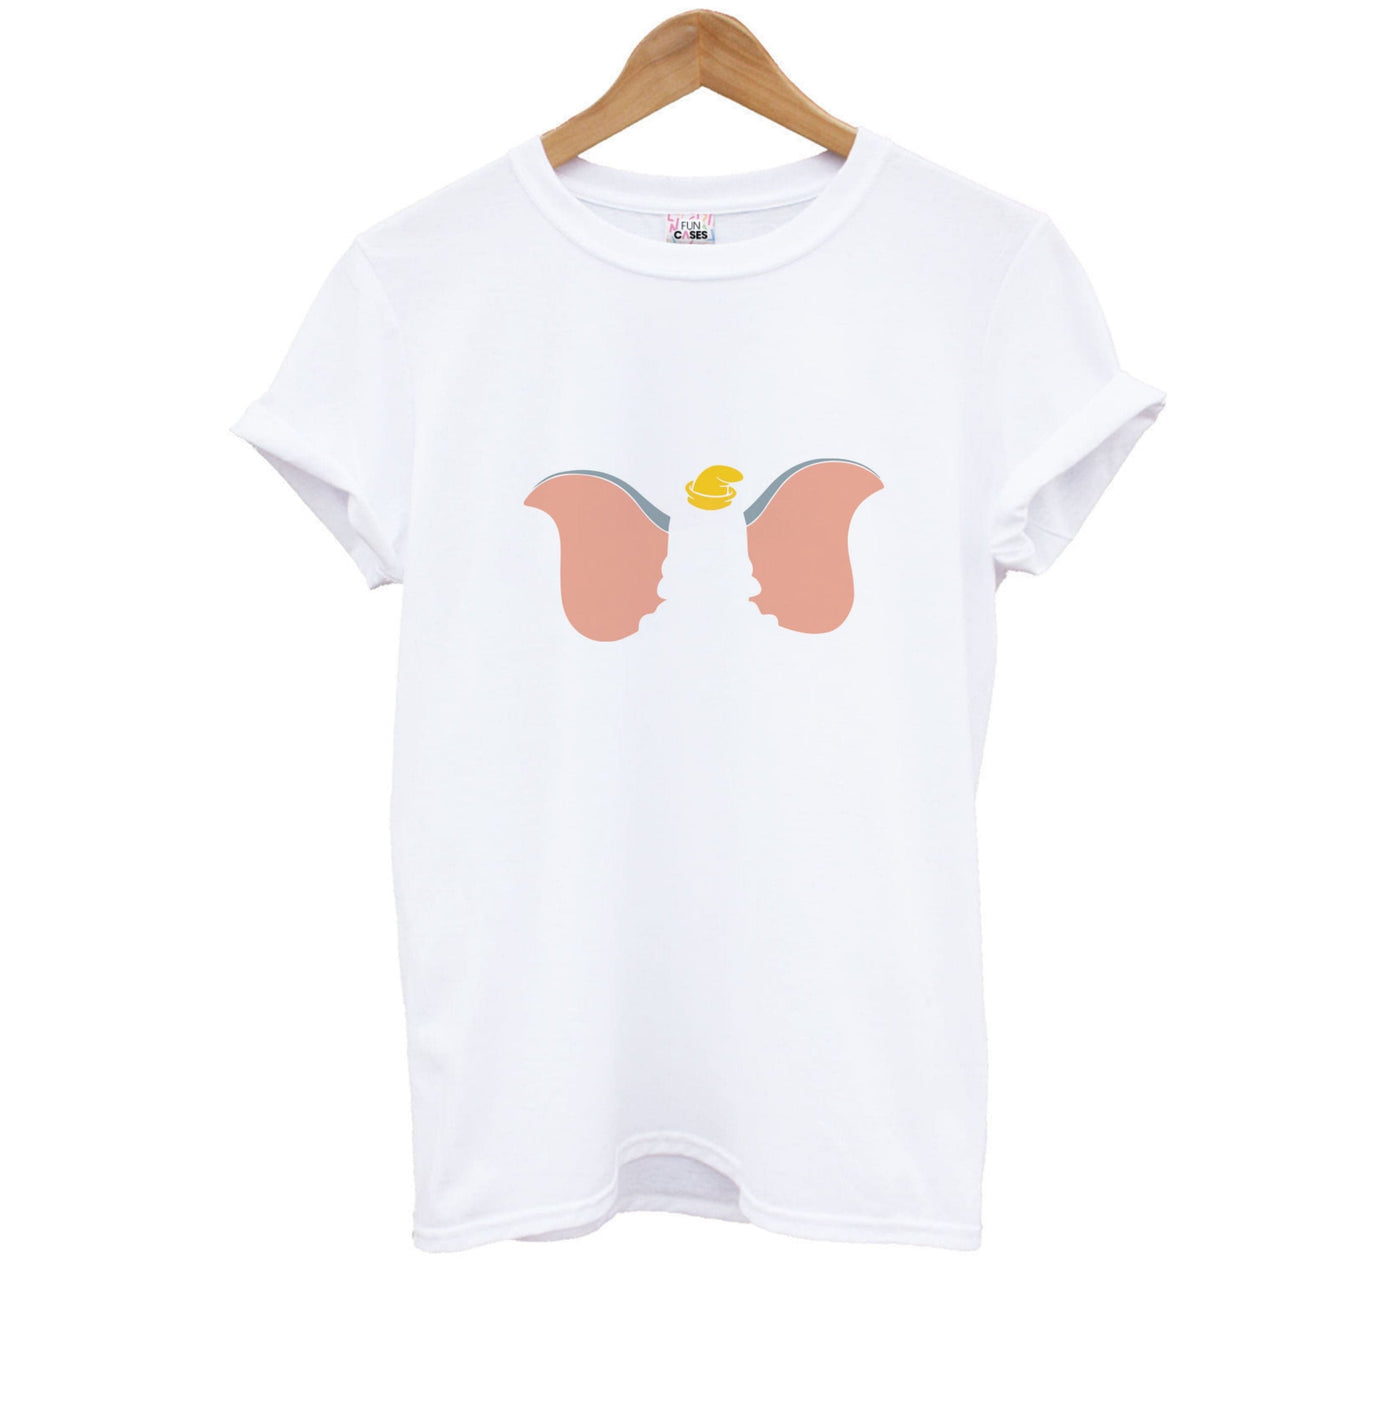 Dumbo - Disney Kids T-Shirt